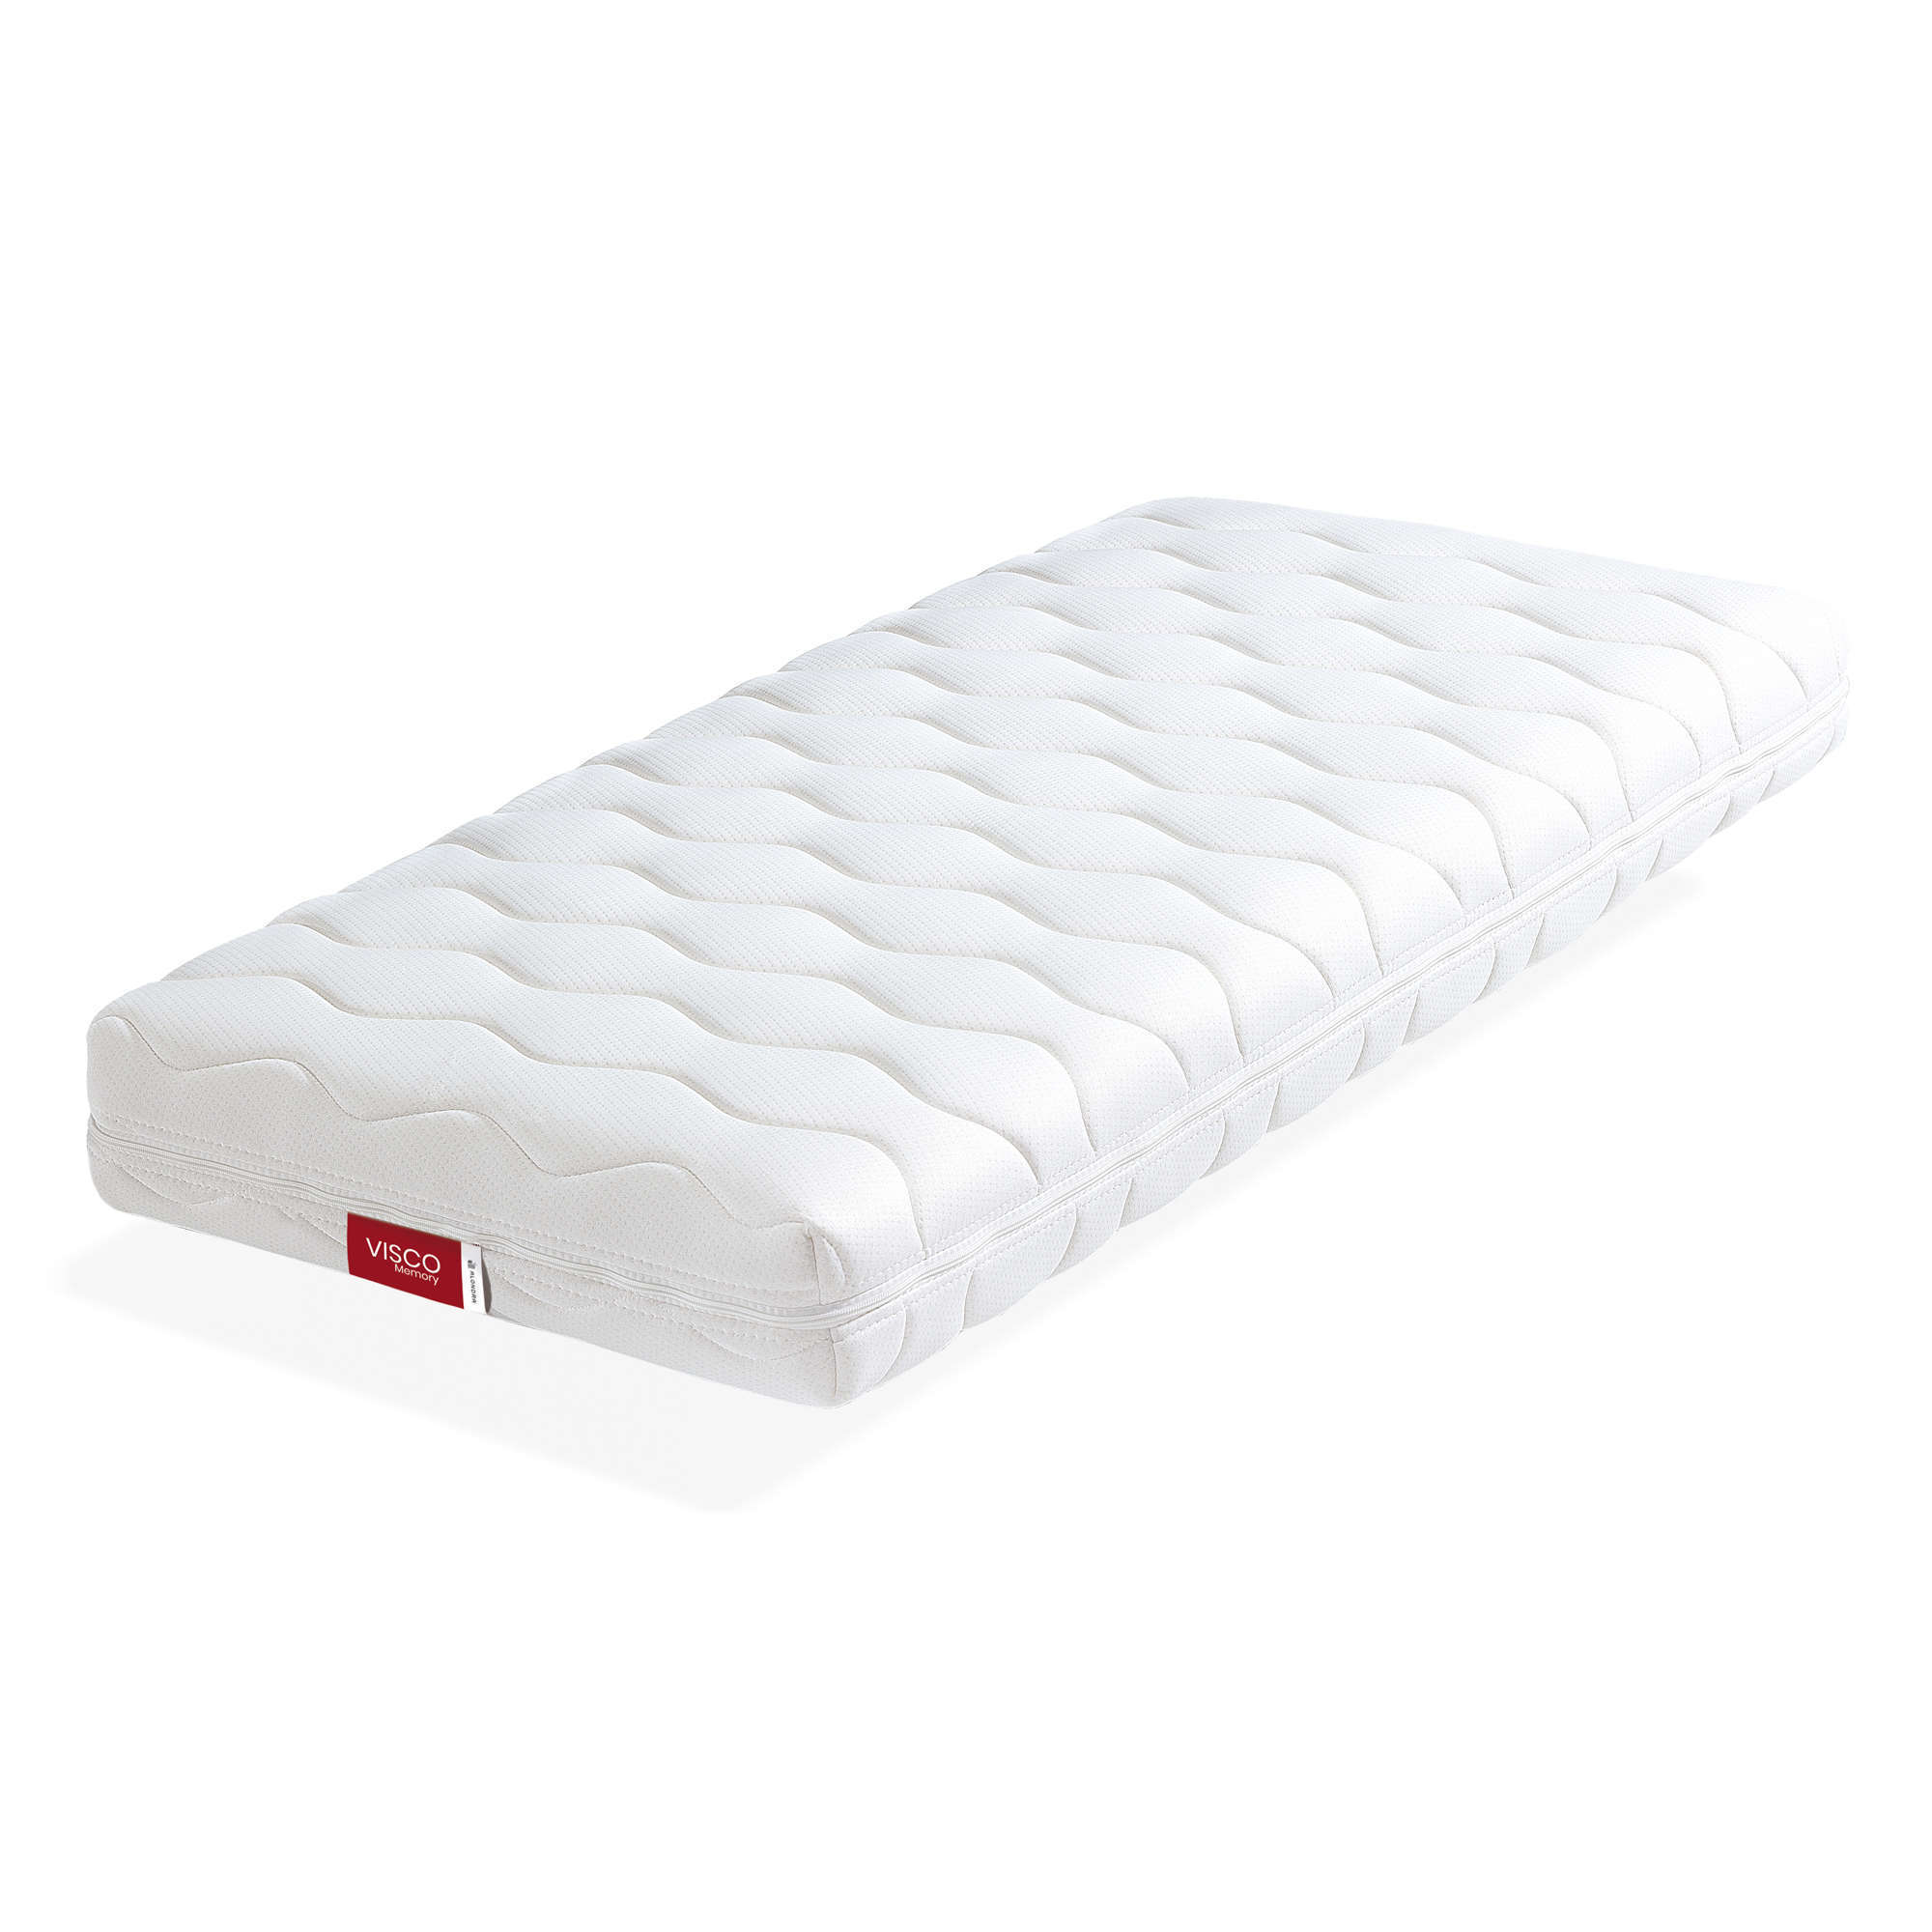 Convertible cribs mattresses